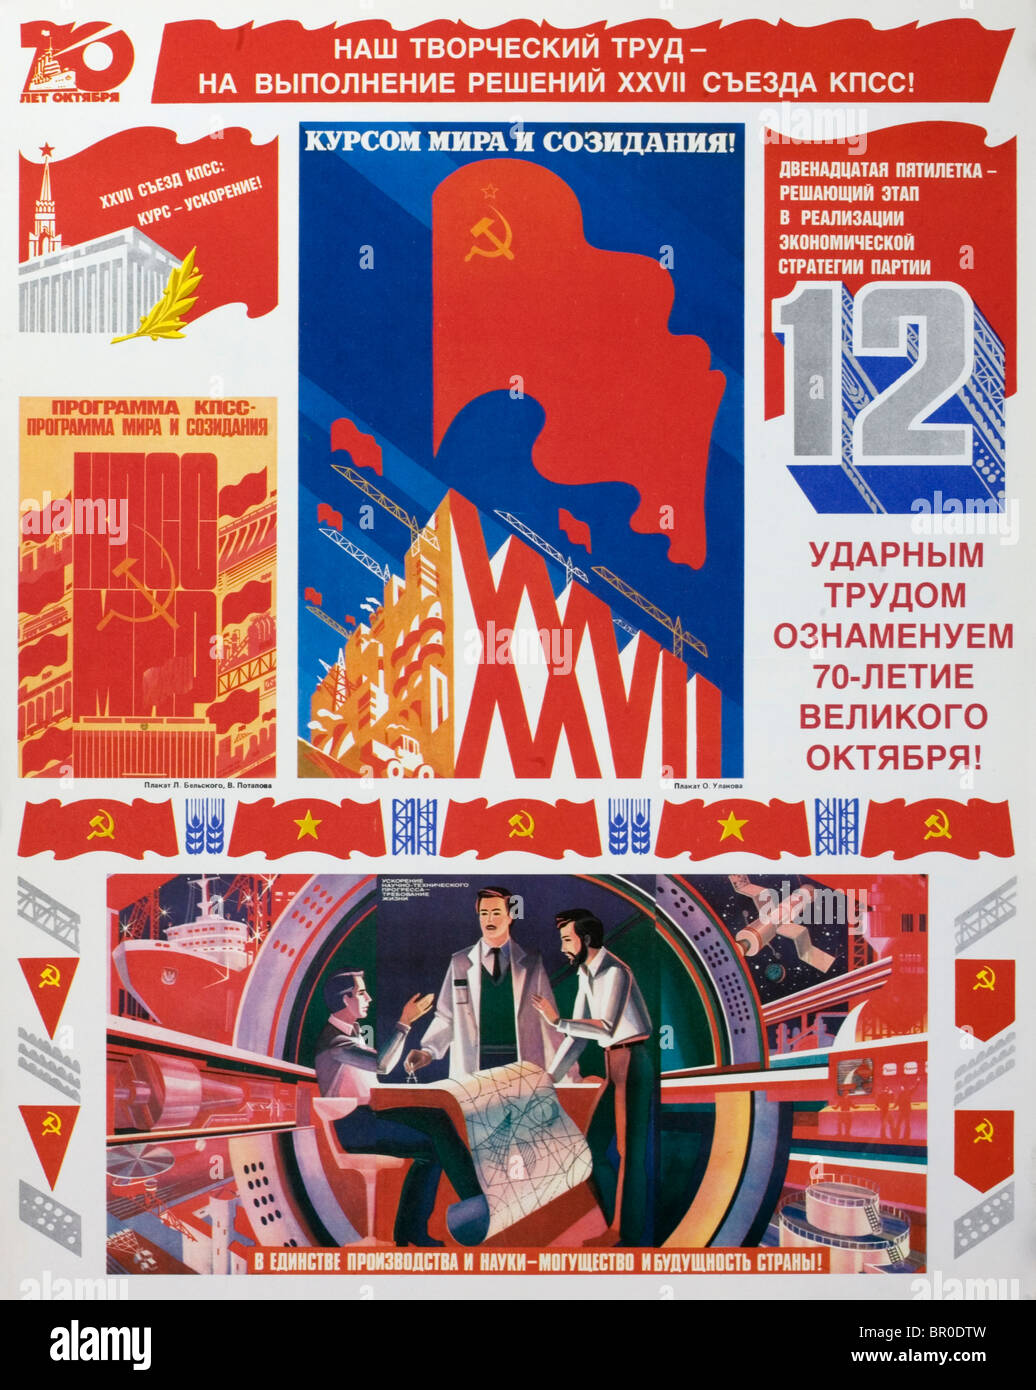 Plakat, Industrie und Wissenschaft in der Sowjetunion (UdSSR) zu feiern. Stockfoto